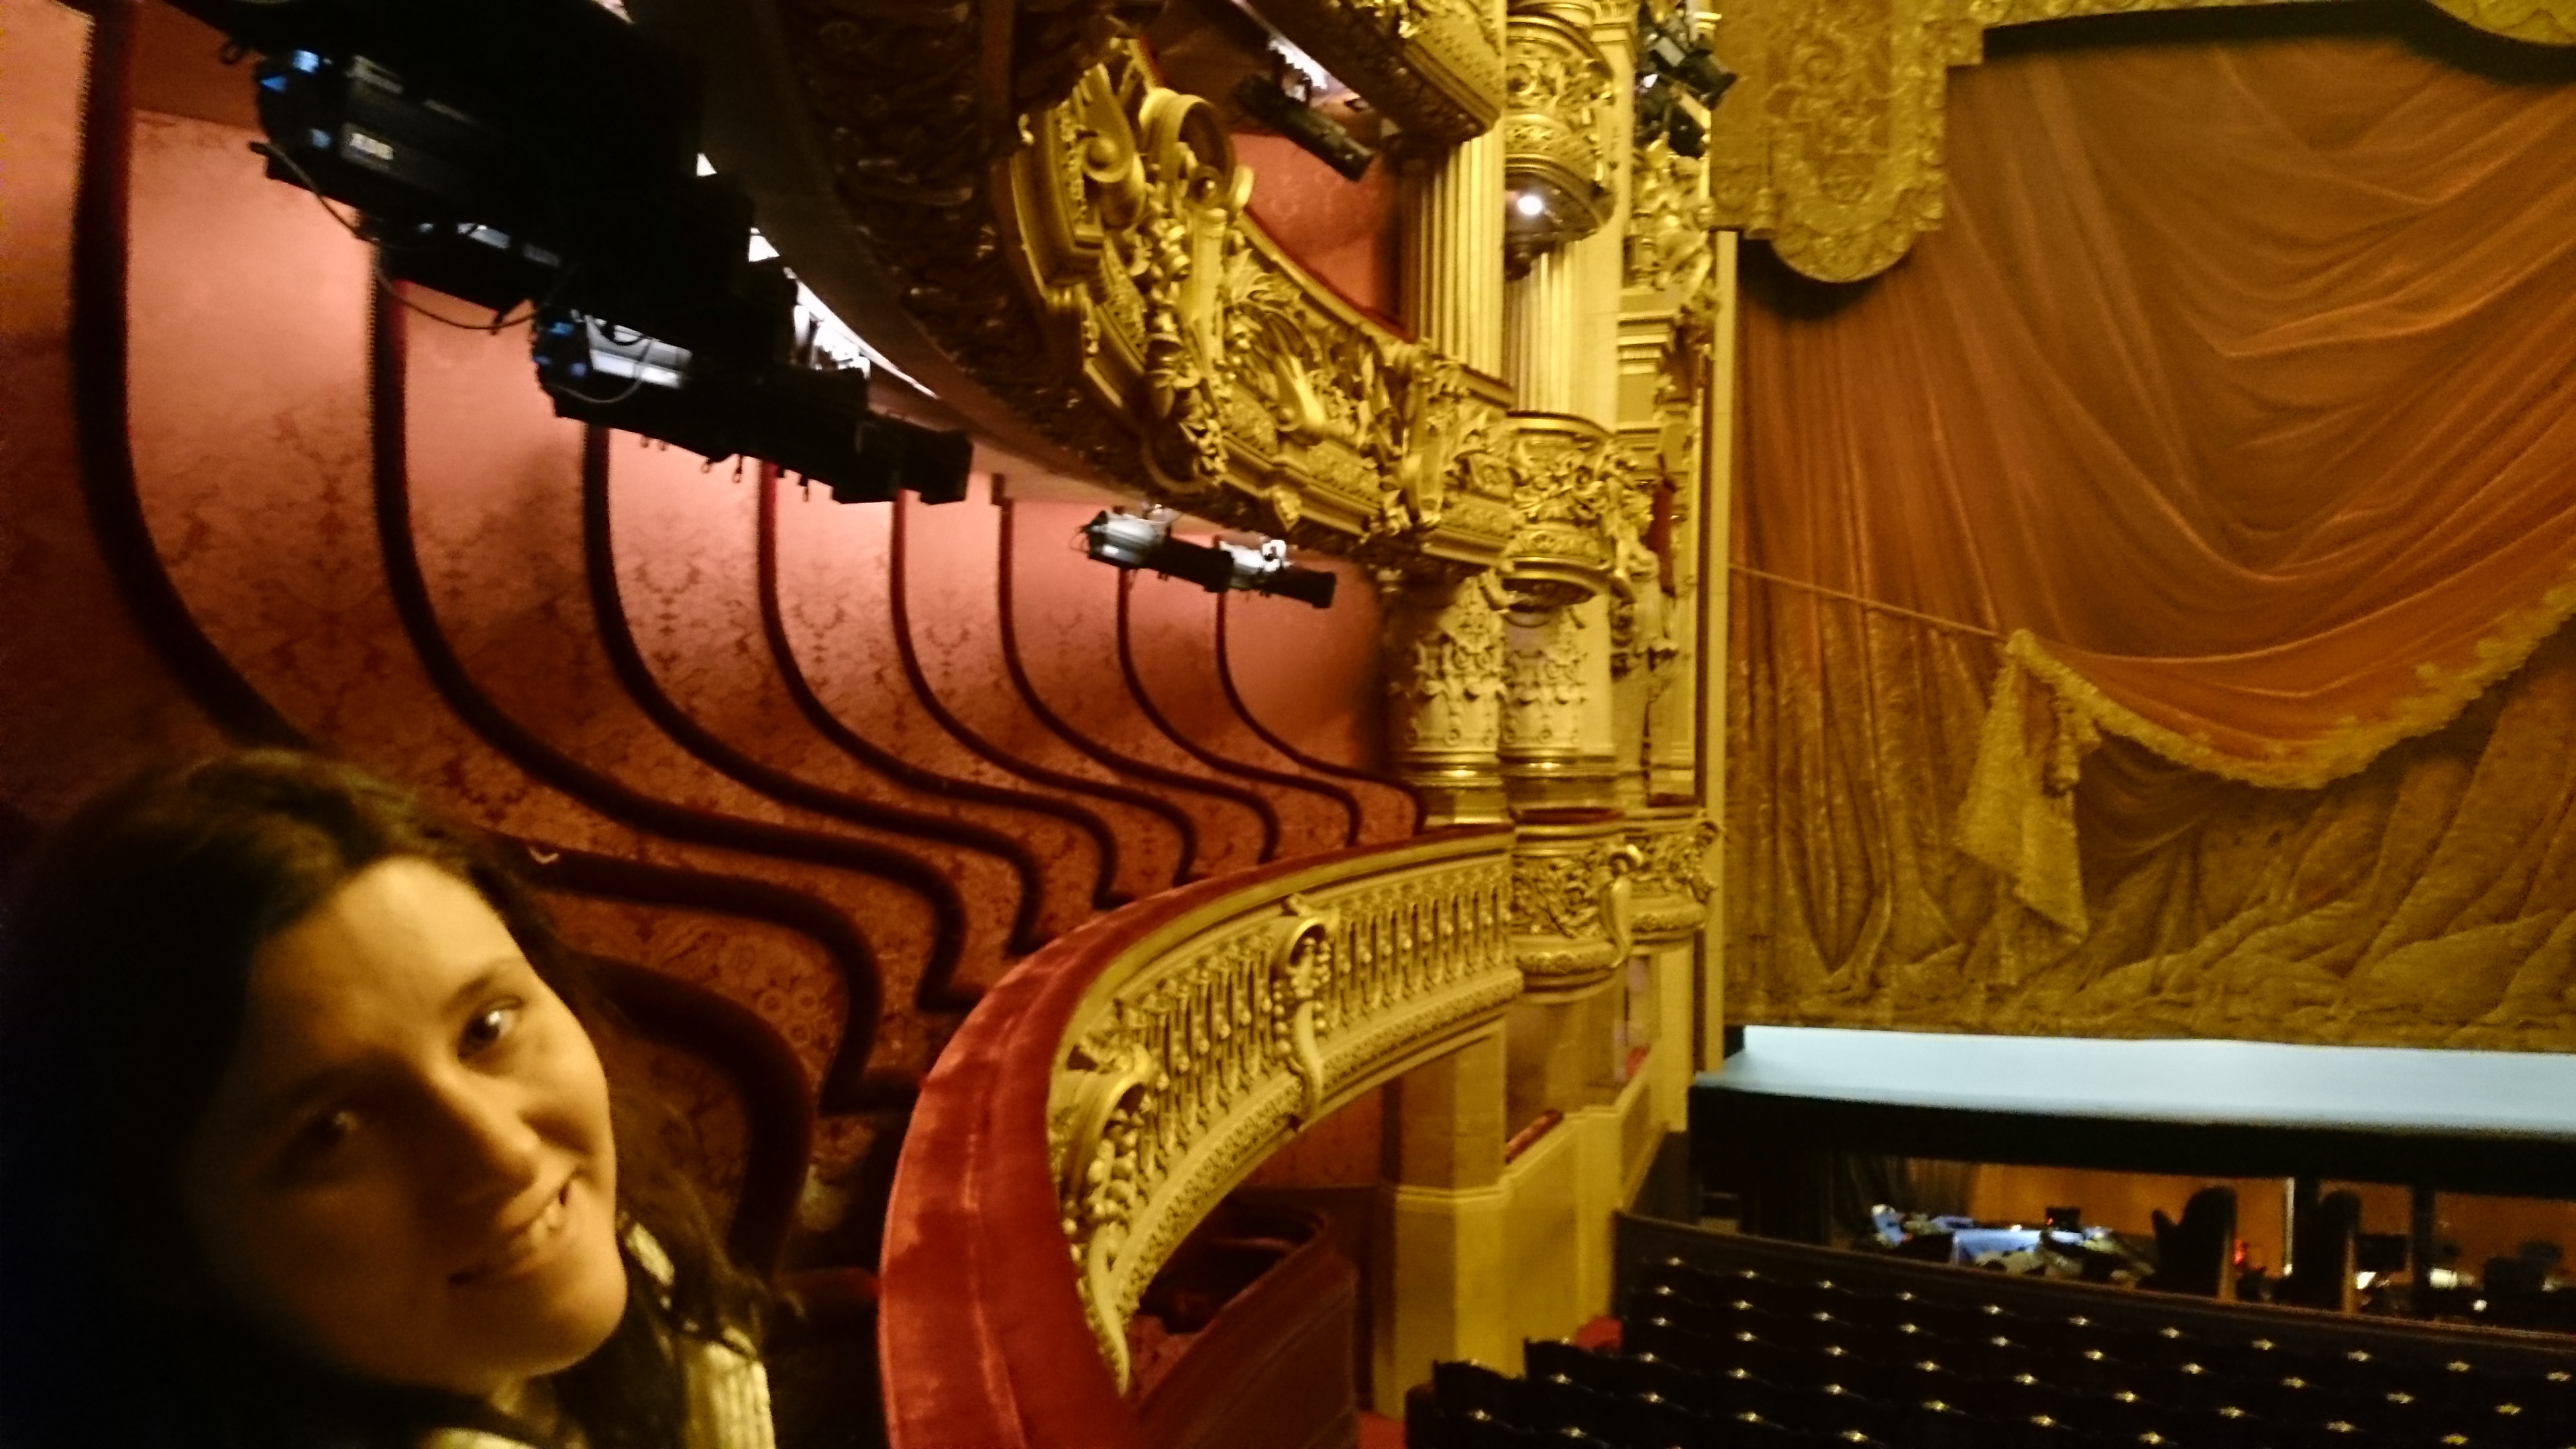 dsc 1039 - Una visita a la Opera de Paris (Palais Garnier)